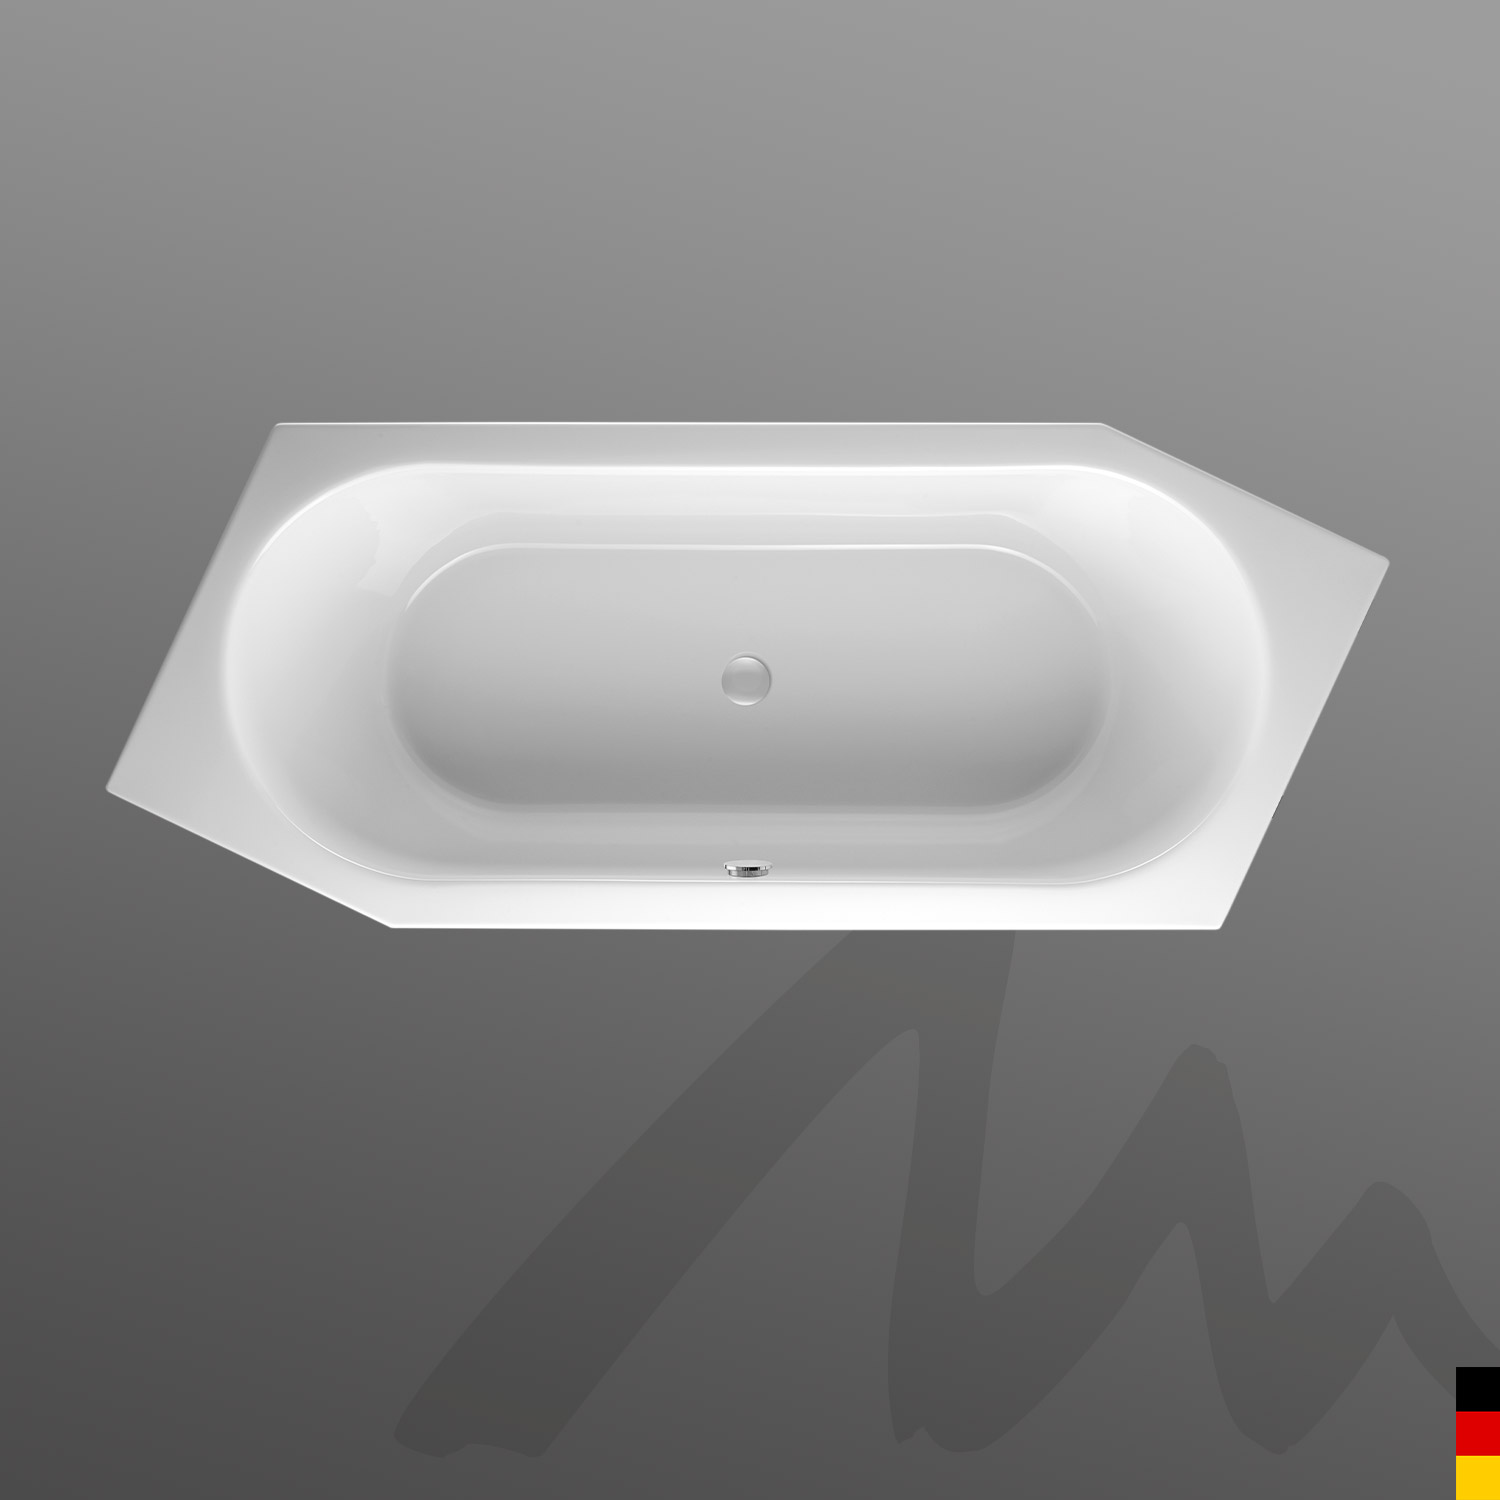 Mauersberger Badewanne 6-Eck Ovata asym 205/80 Ausführung links  205x80x45cm  Farbe:rein-weiß